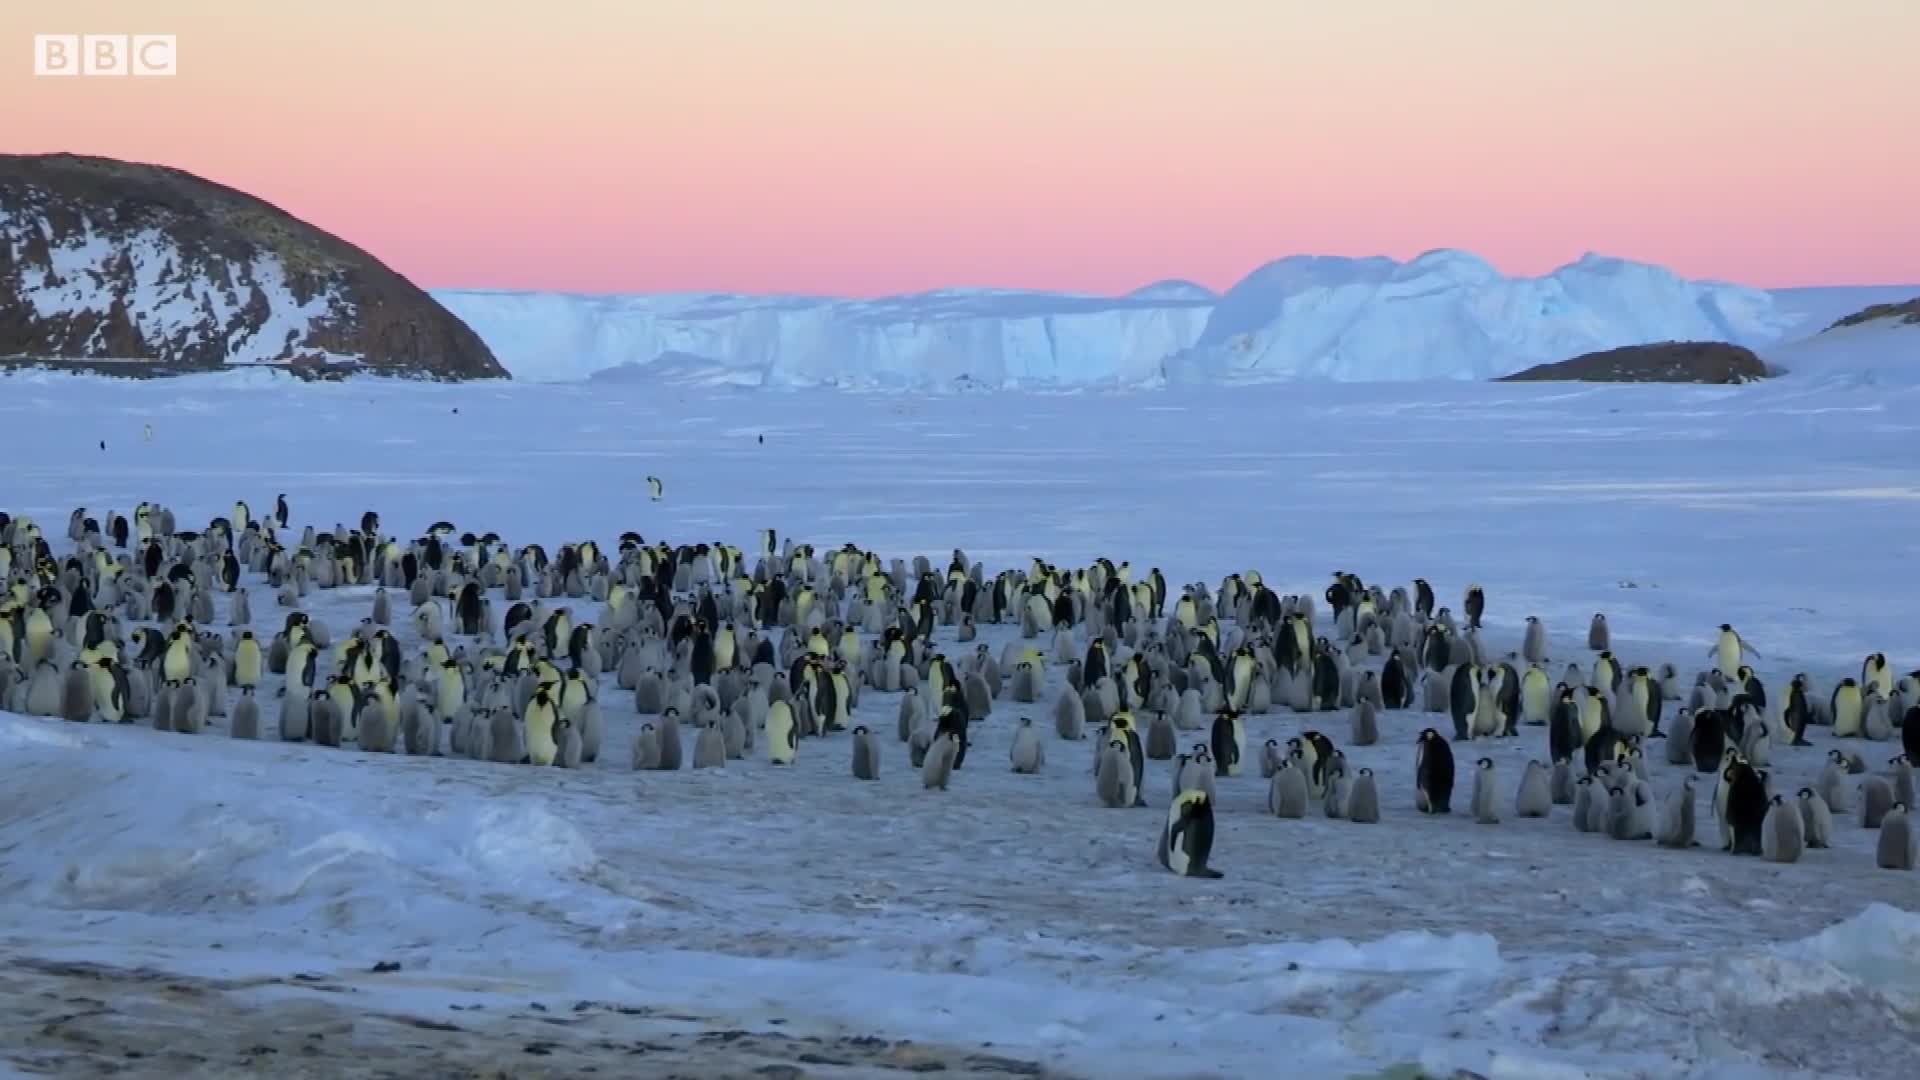 Soup sáng: Độc đáo cảnh đàn chim cánh cụt dàn trận, chống lại kẻ săn mồi láu cá